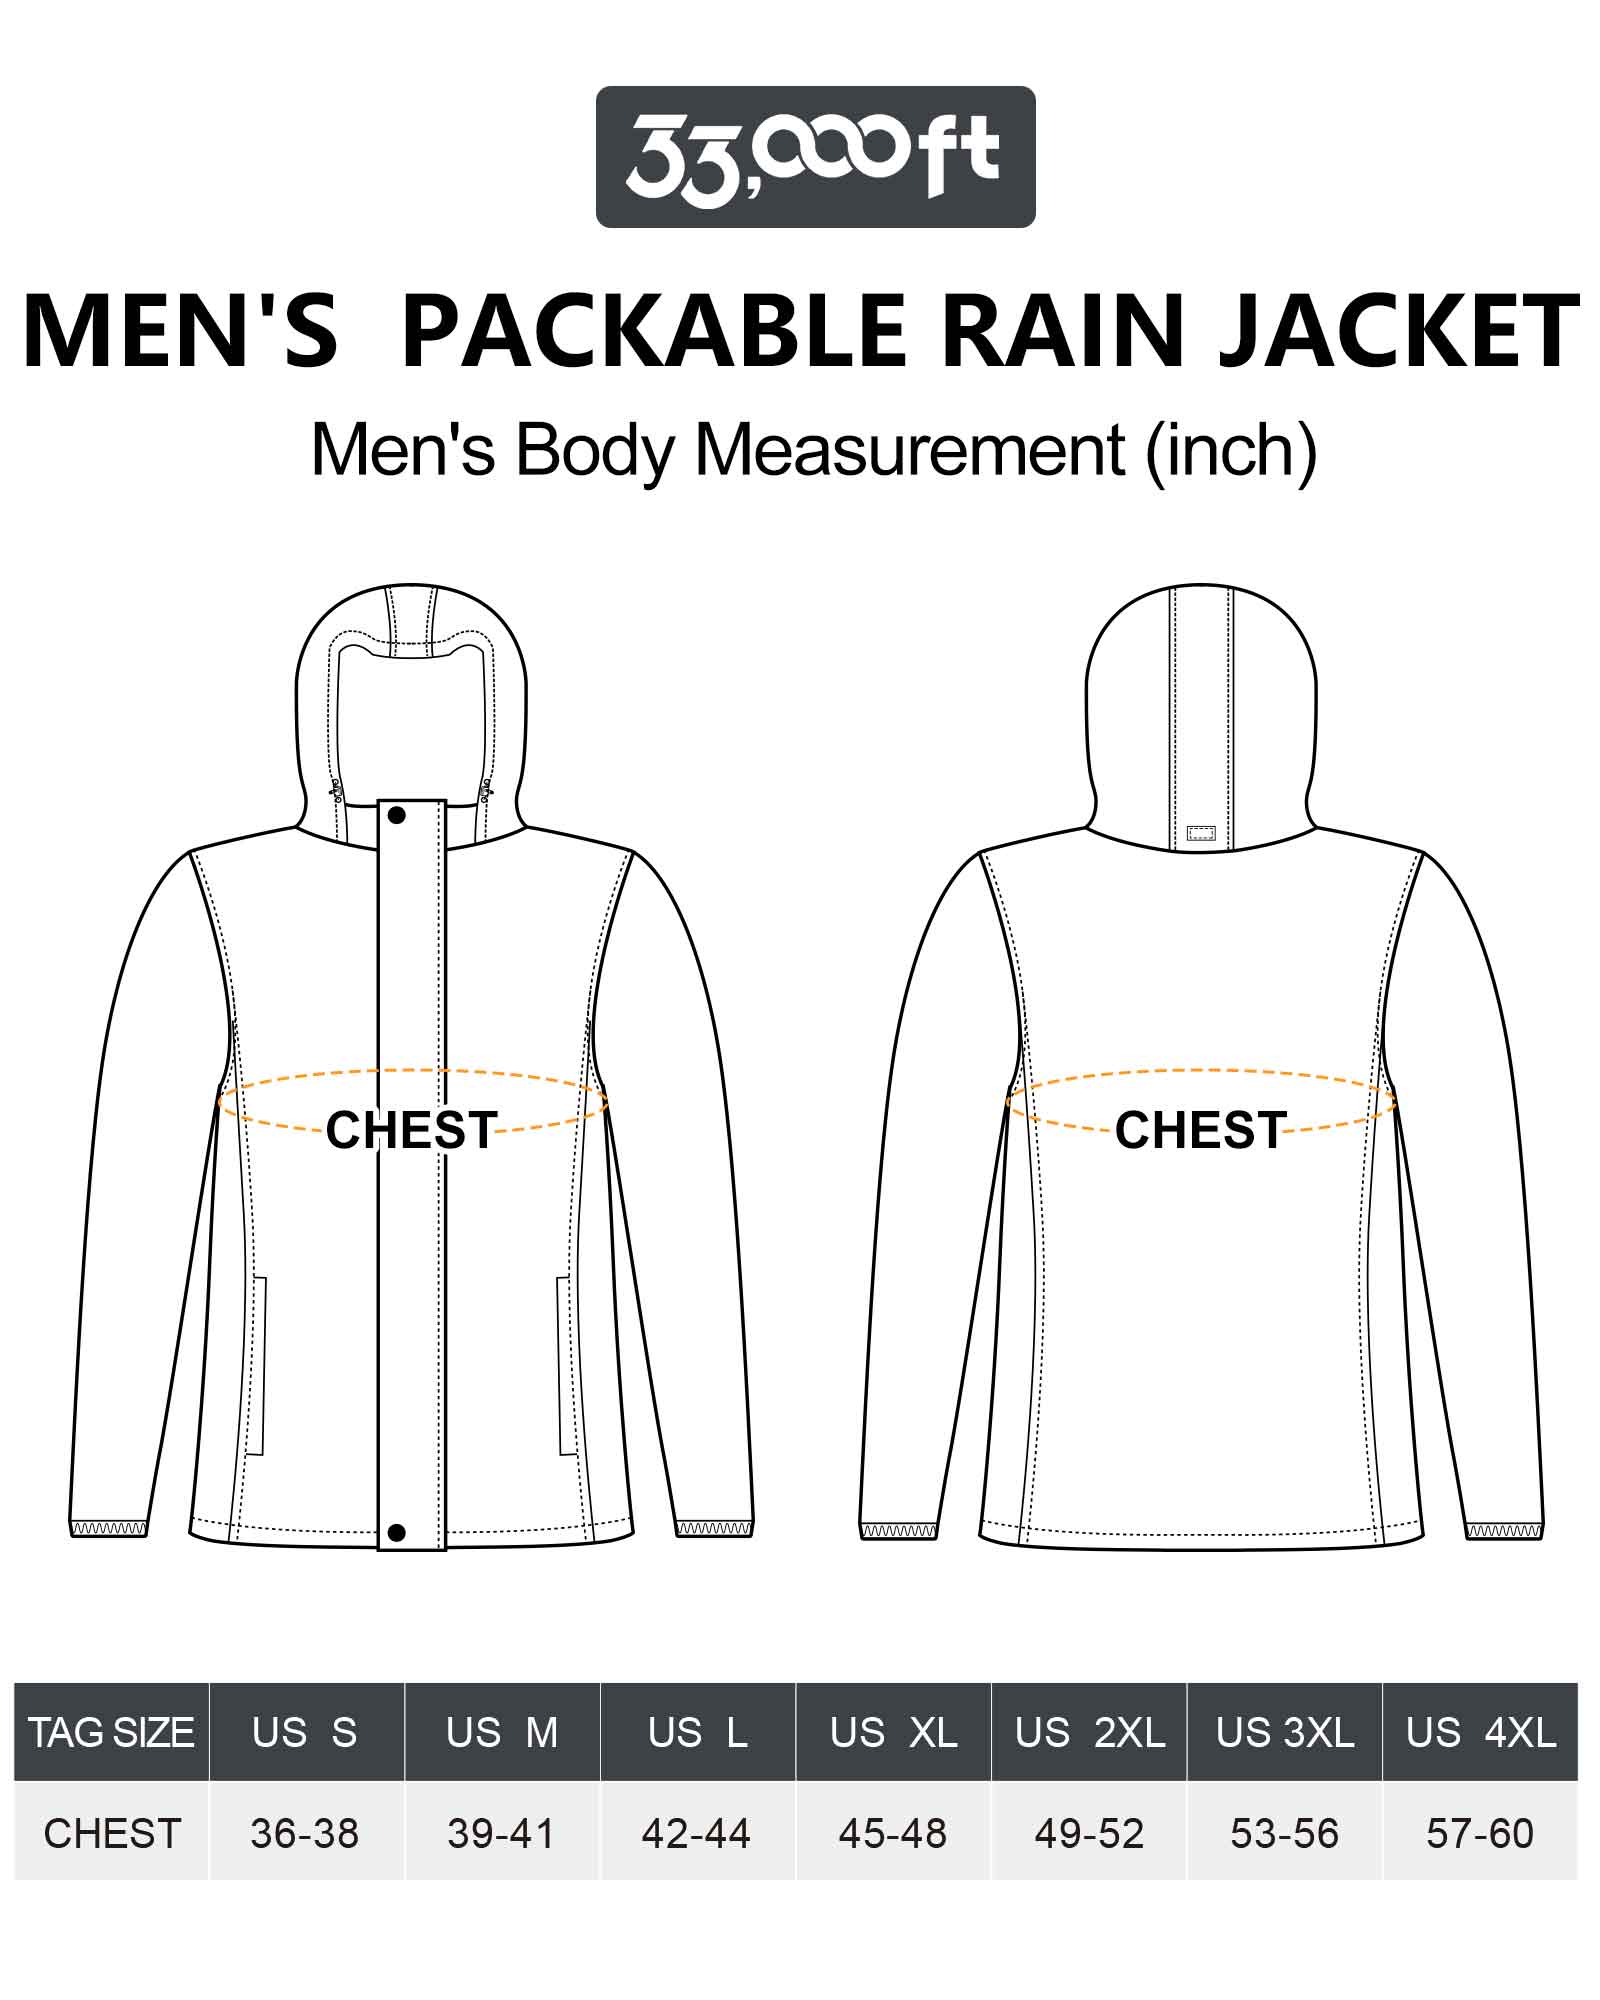 1.10 lbs 10000mm W/P Index 10000 Level Breathable Men's Rain Pants wit –  33,000ft